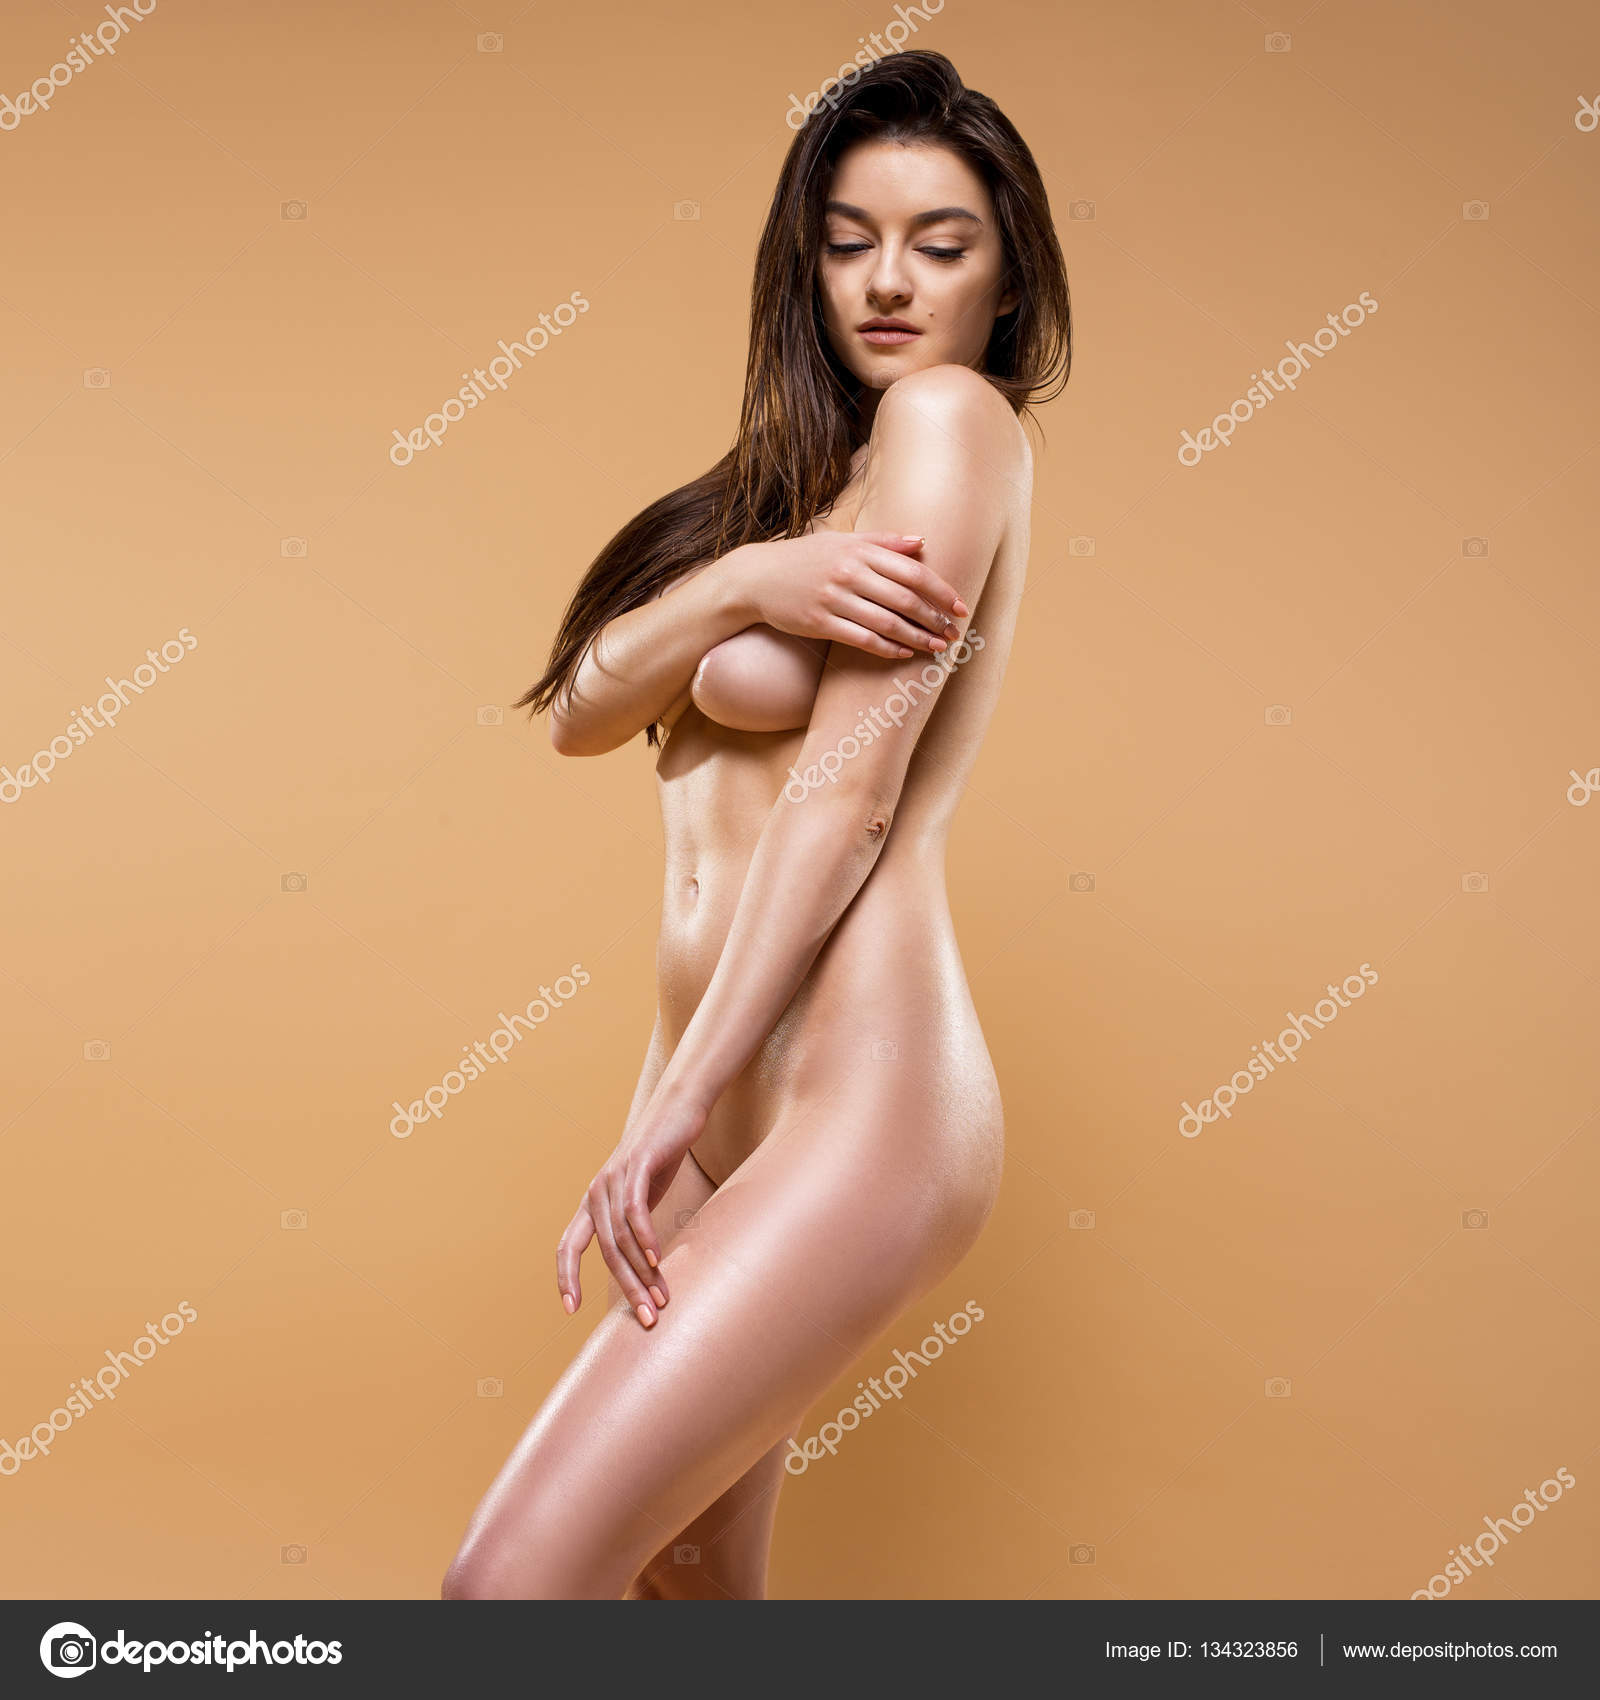 Hot Naked Women Posing